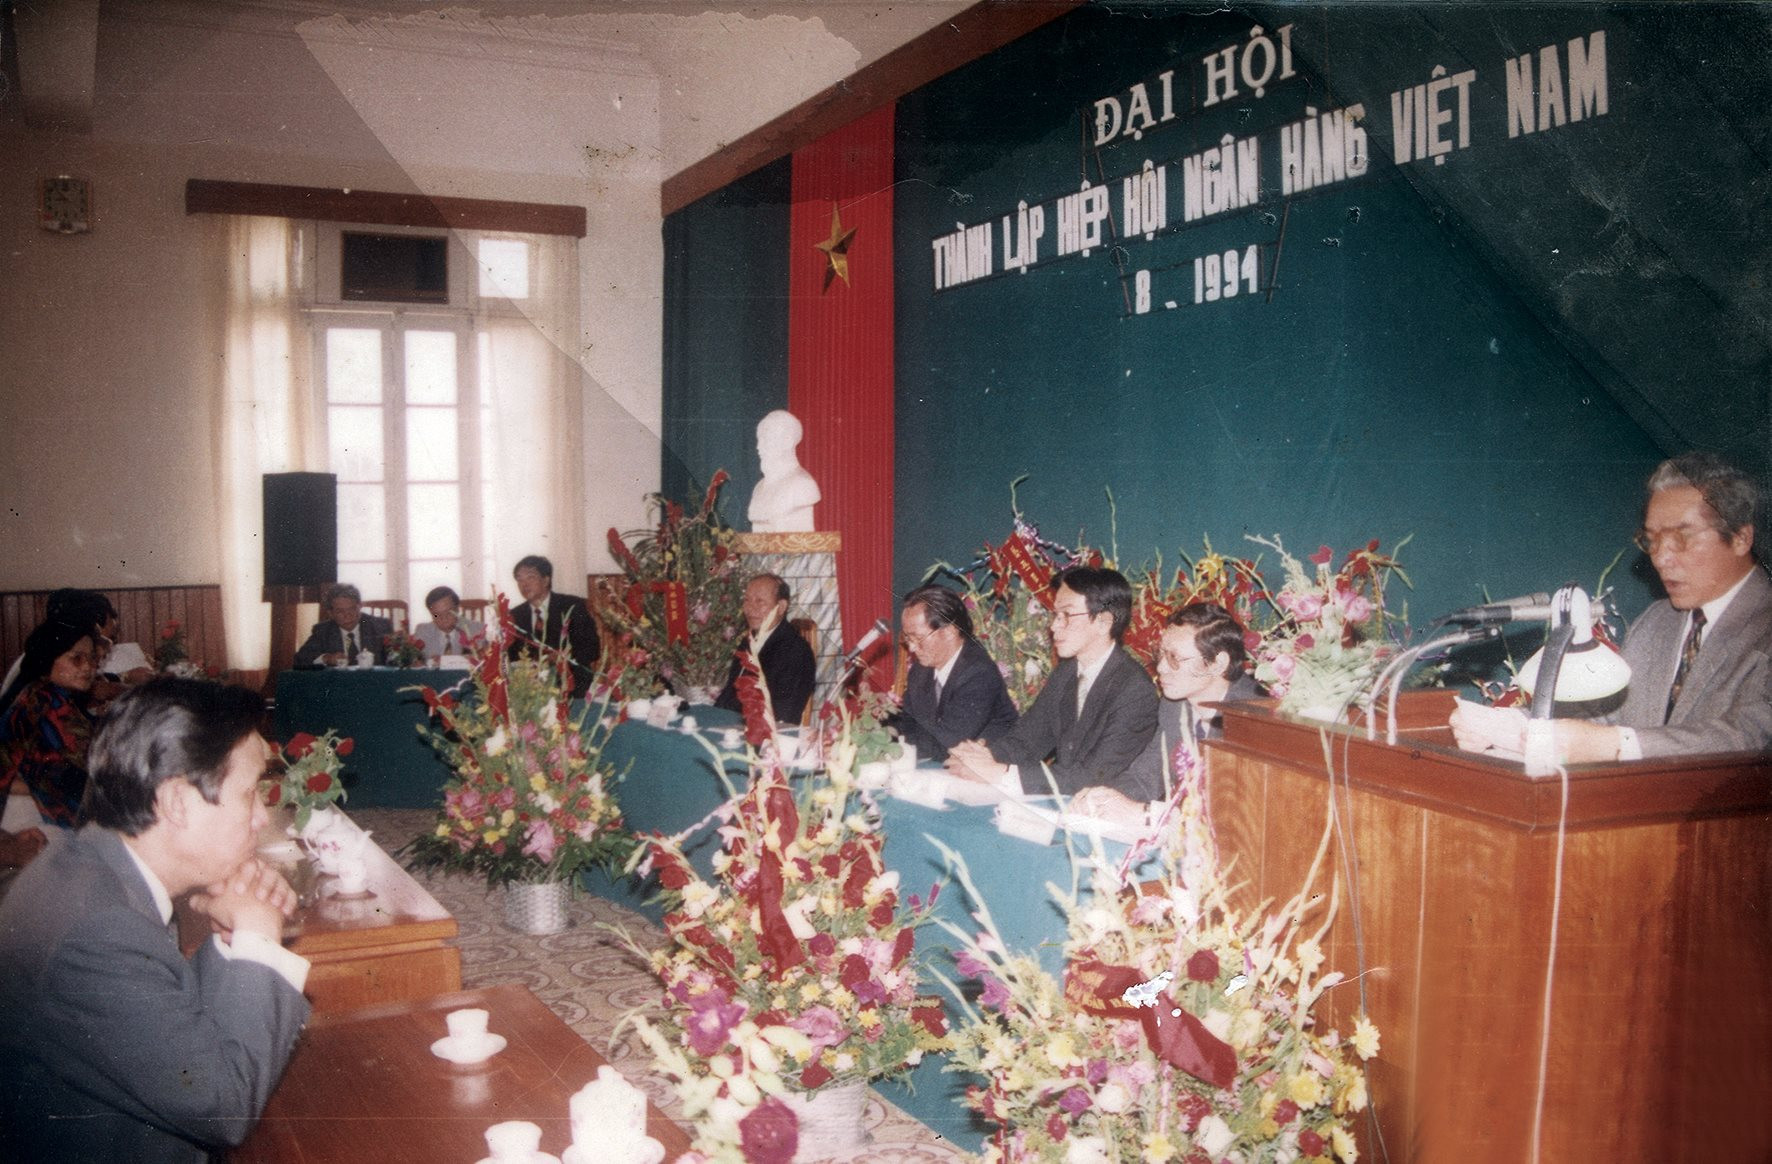 3-dai-hoi-thanh-lap-hiep-hoi-ngan-hang-viet-nam-thang-8.1994-.jpg